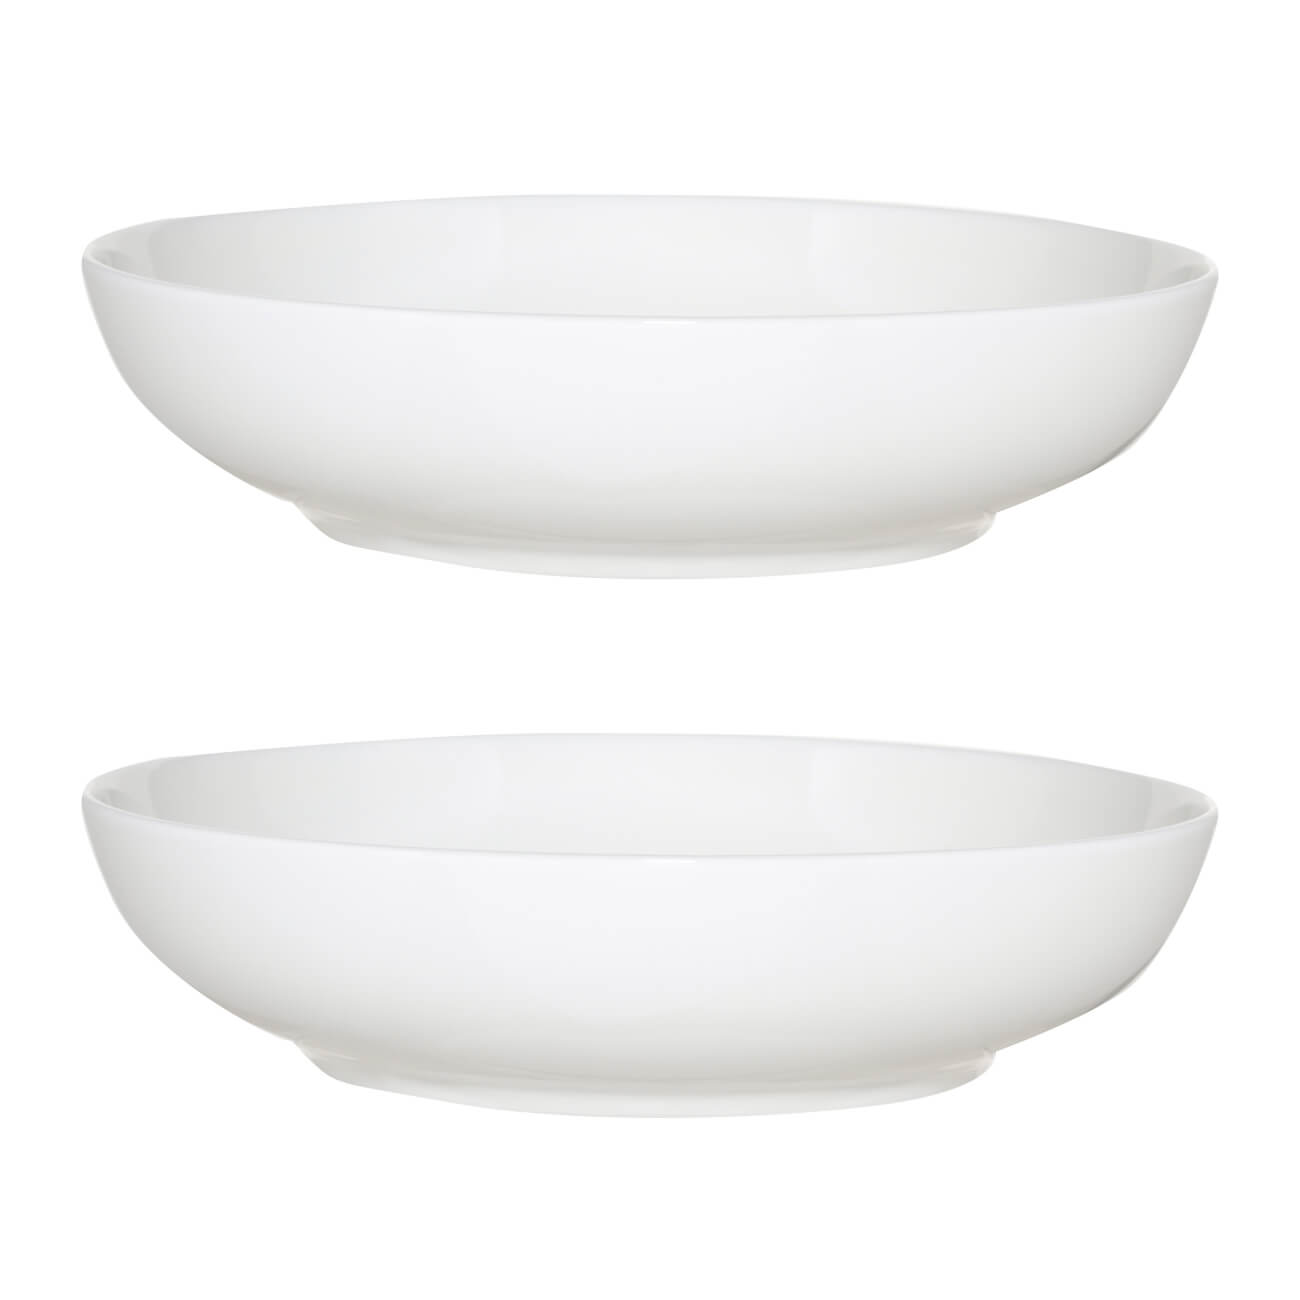 Тарелка суповая, 20х5 см, 2 шт, фарфор F, белая, Ideal white тарелка суповая стеклокерамика 21 см квадратная carine white luminarc h3667 l5406 n6802 белая